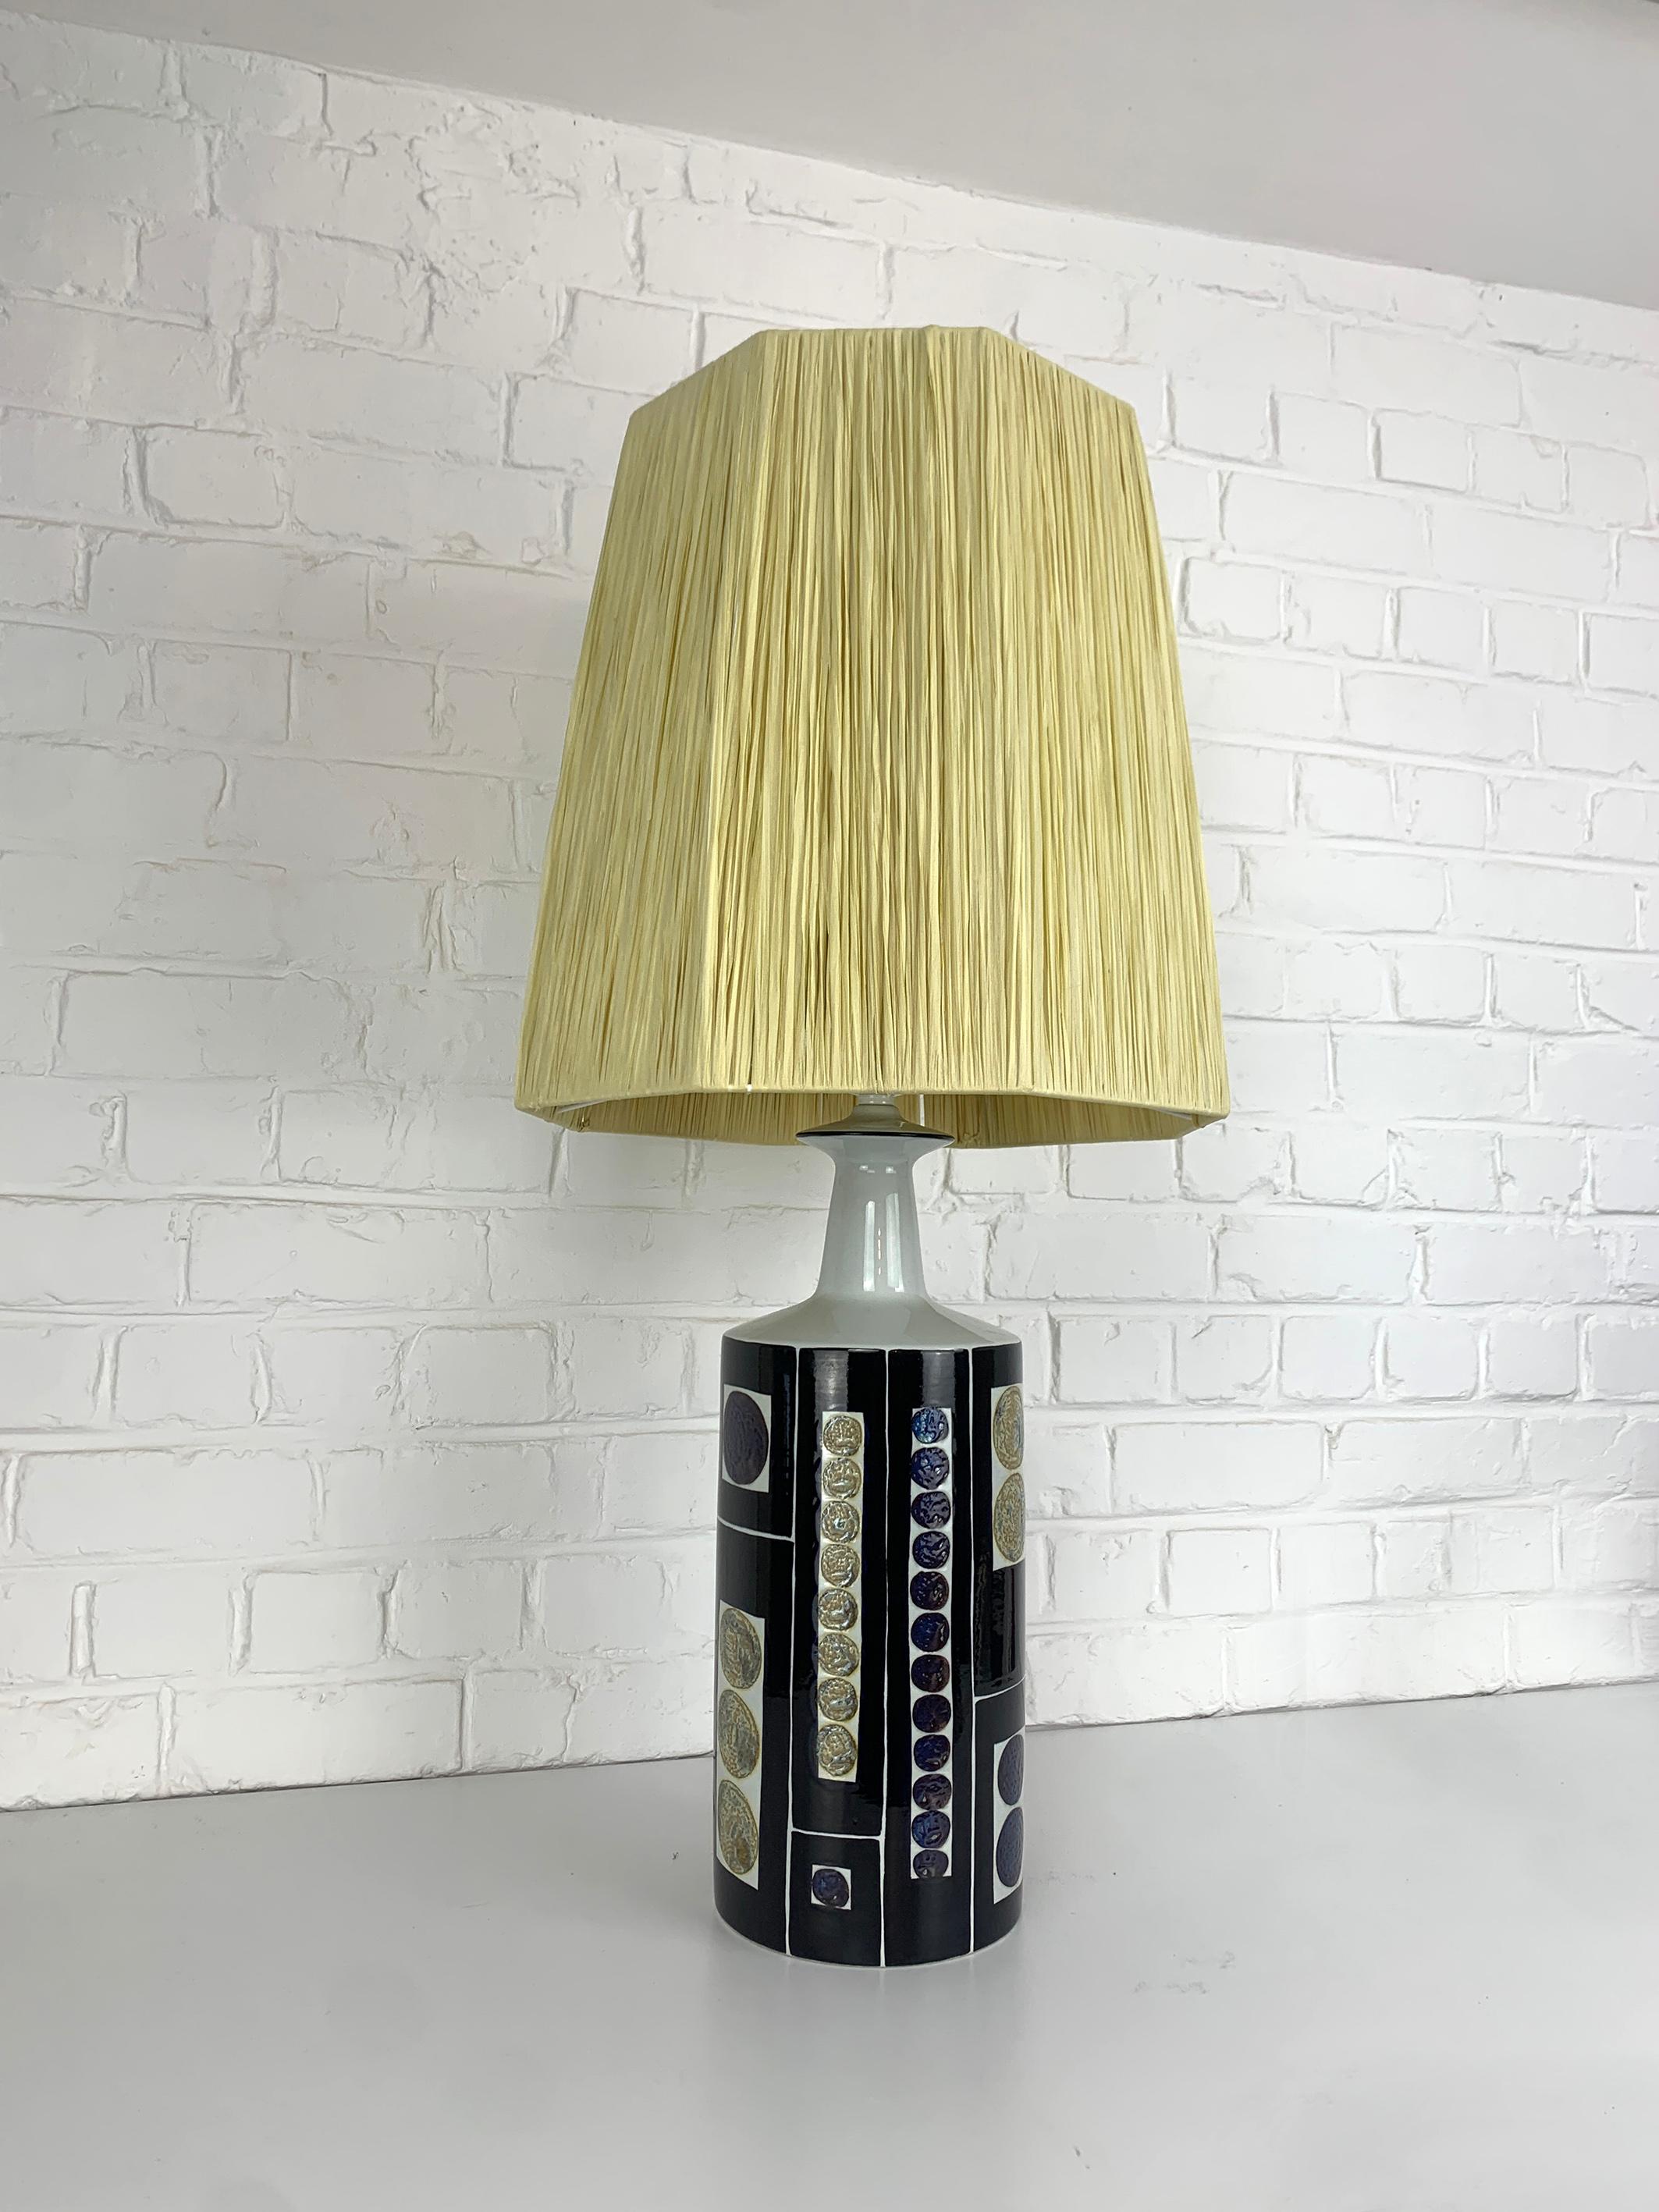 Große Tischlampe aus den späten 1960er oder frühen 1970er Jahren. Diese Lampe wurde von Royal Copenhagen hergestellt und von Fog & Mørup, Dänemark, verkauft. 

Beeindruckendes, kühnes Grafikdesign von Inge-Lise Koefoed mit einem Dekor in Dunkelblau